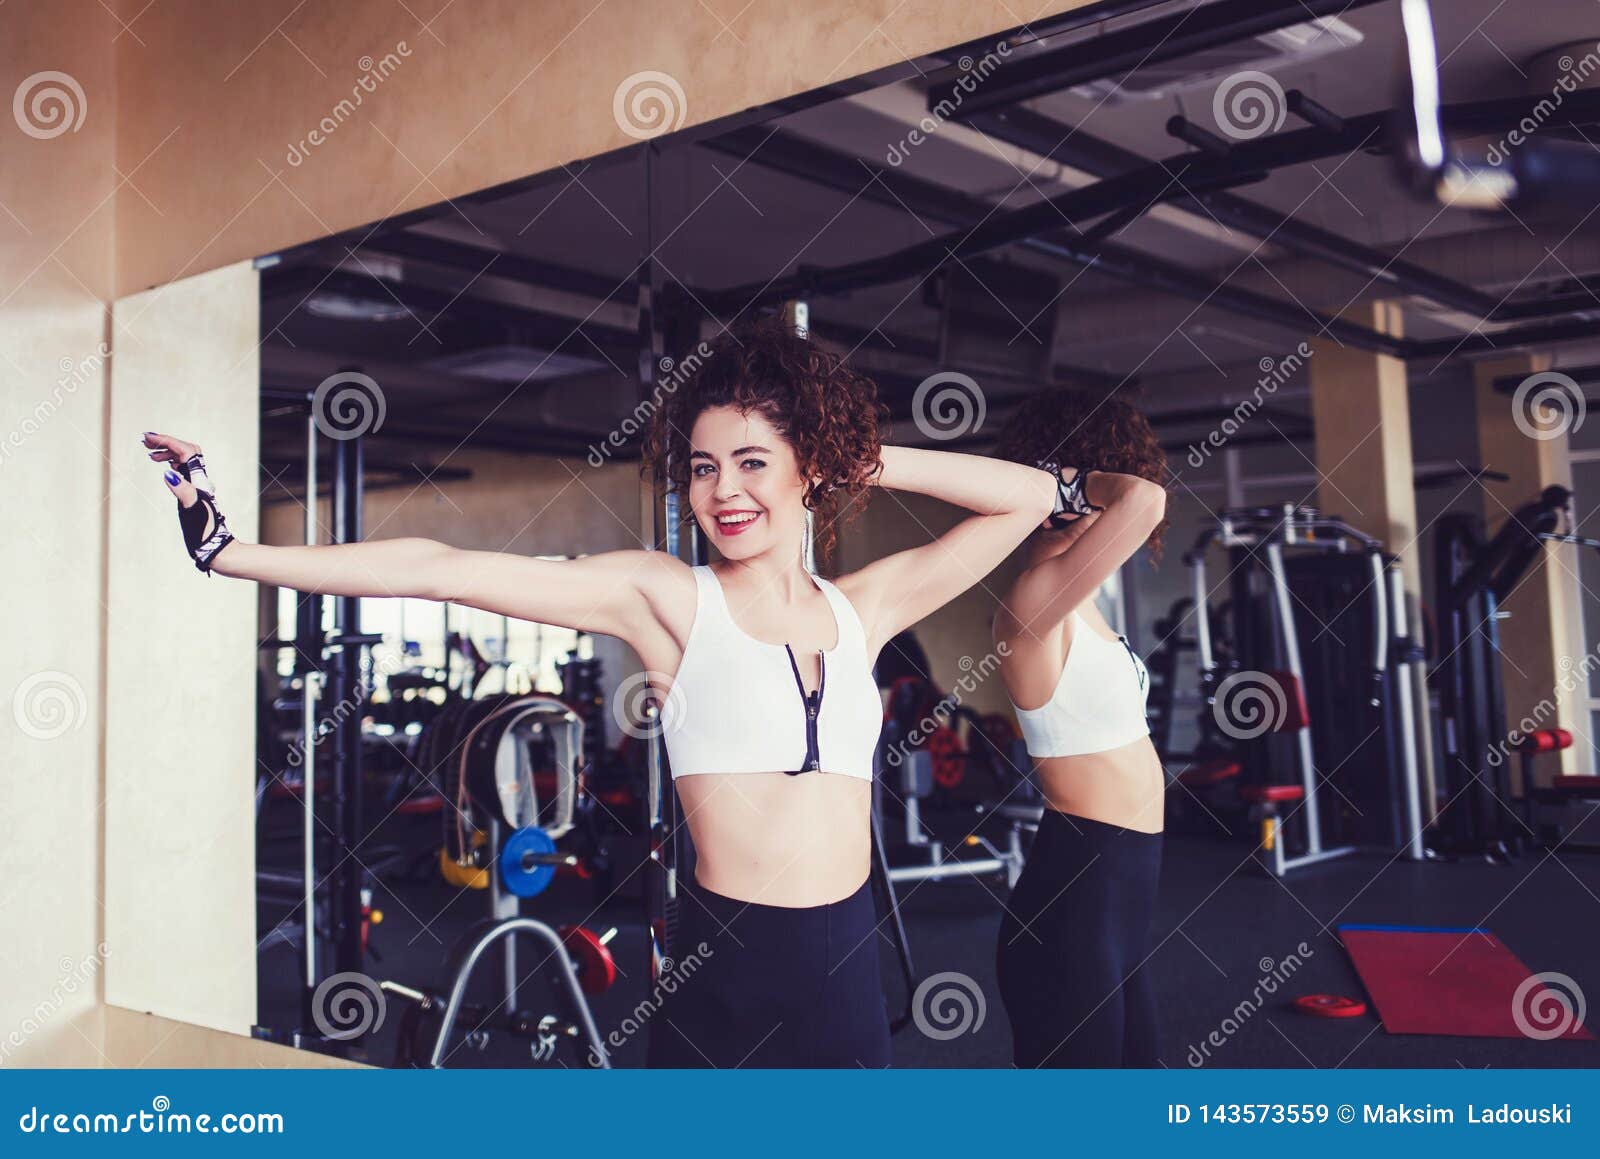 Joyful Curly Brunette Fitness Woman Stock Image Image Of Beauty Beautiful 143573559 